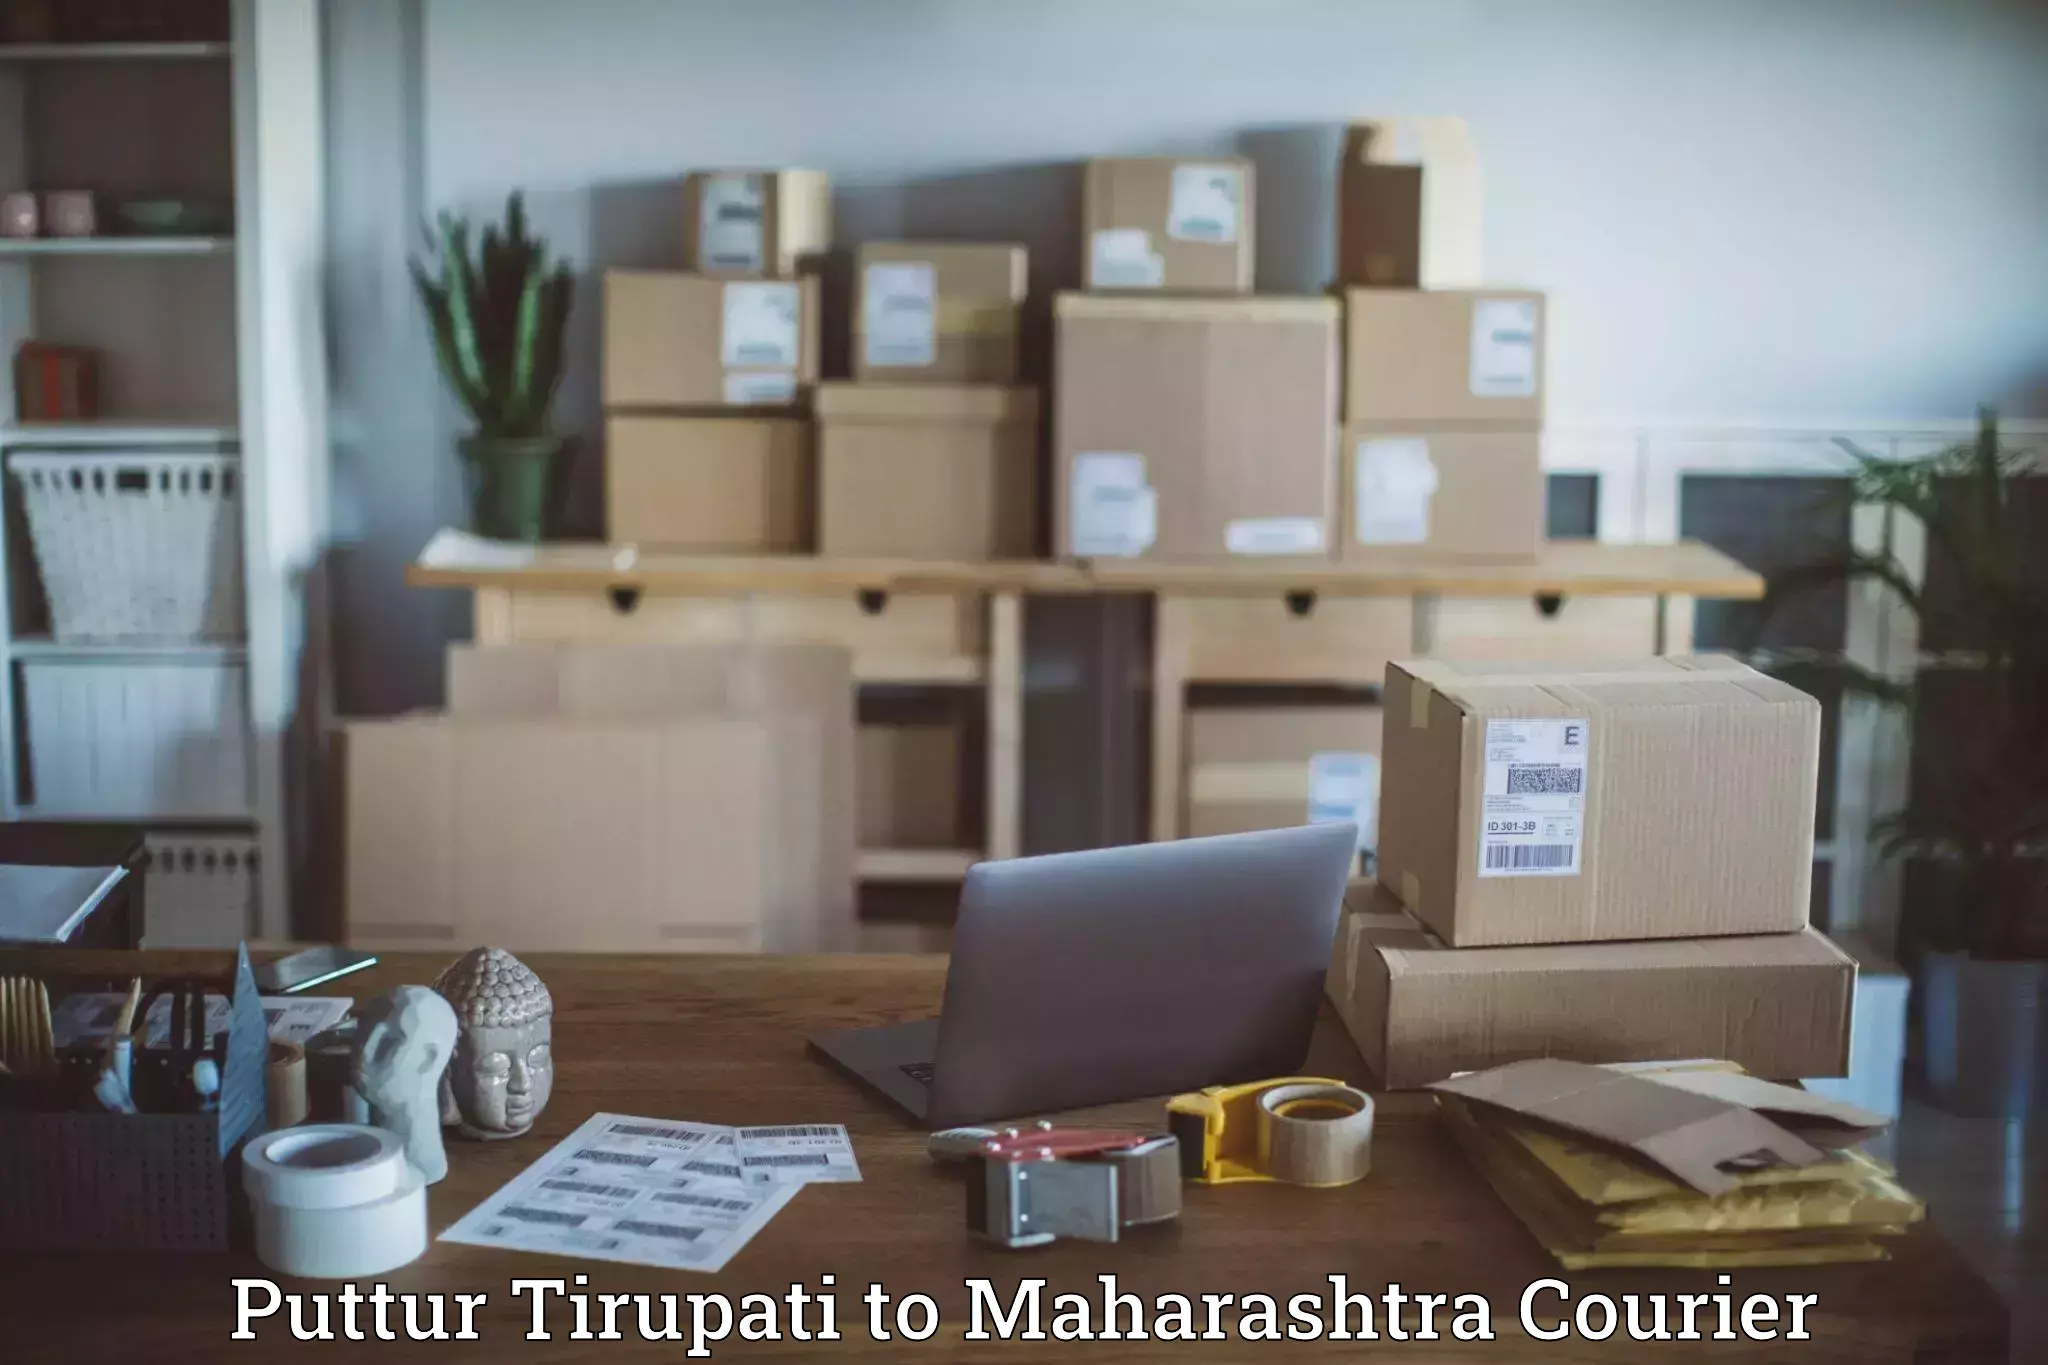 Advanced shipping technology Puttur Tirupati to Maharashtra